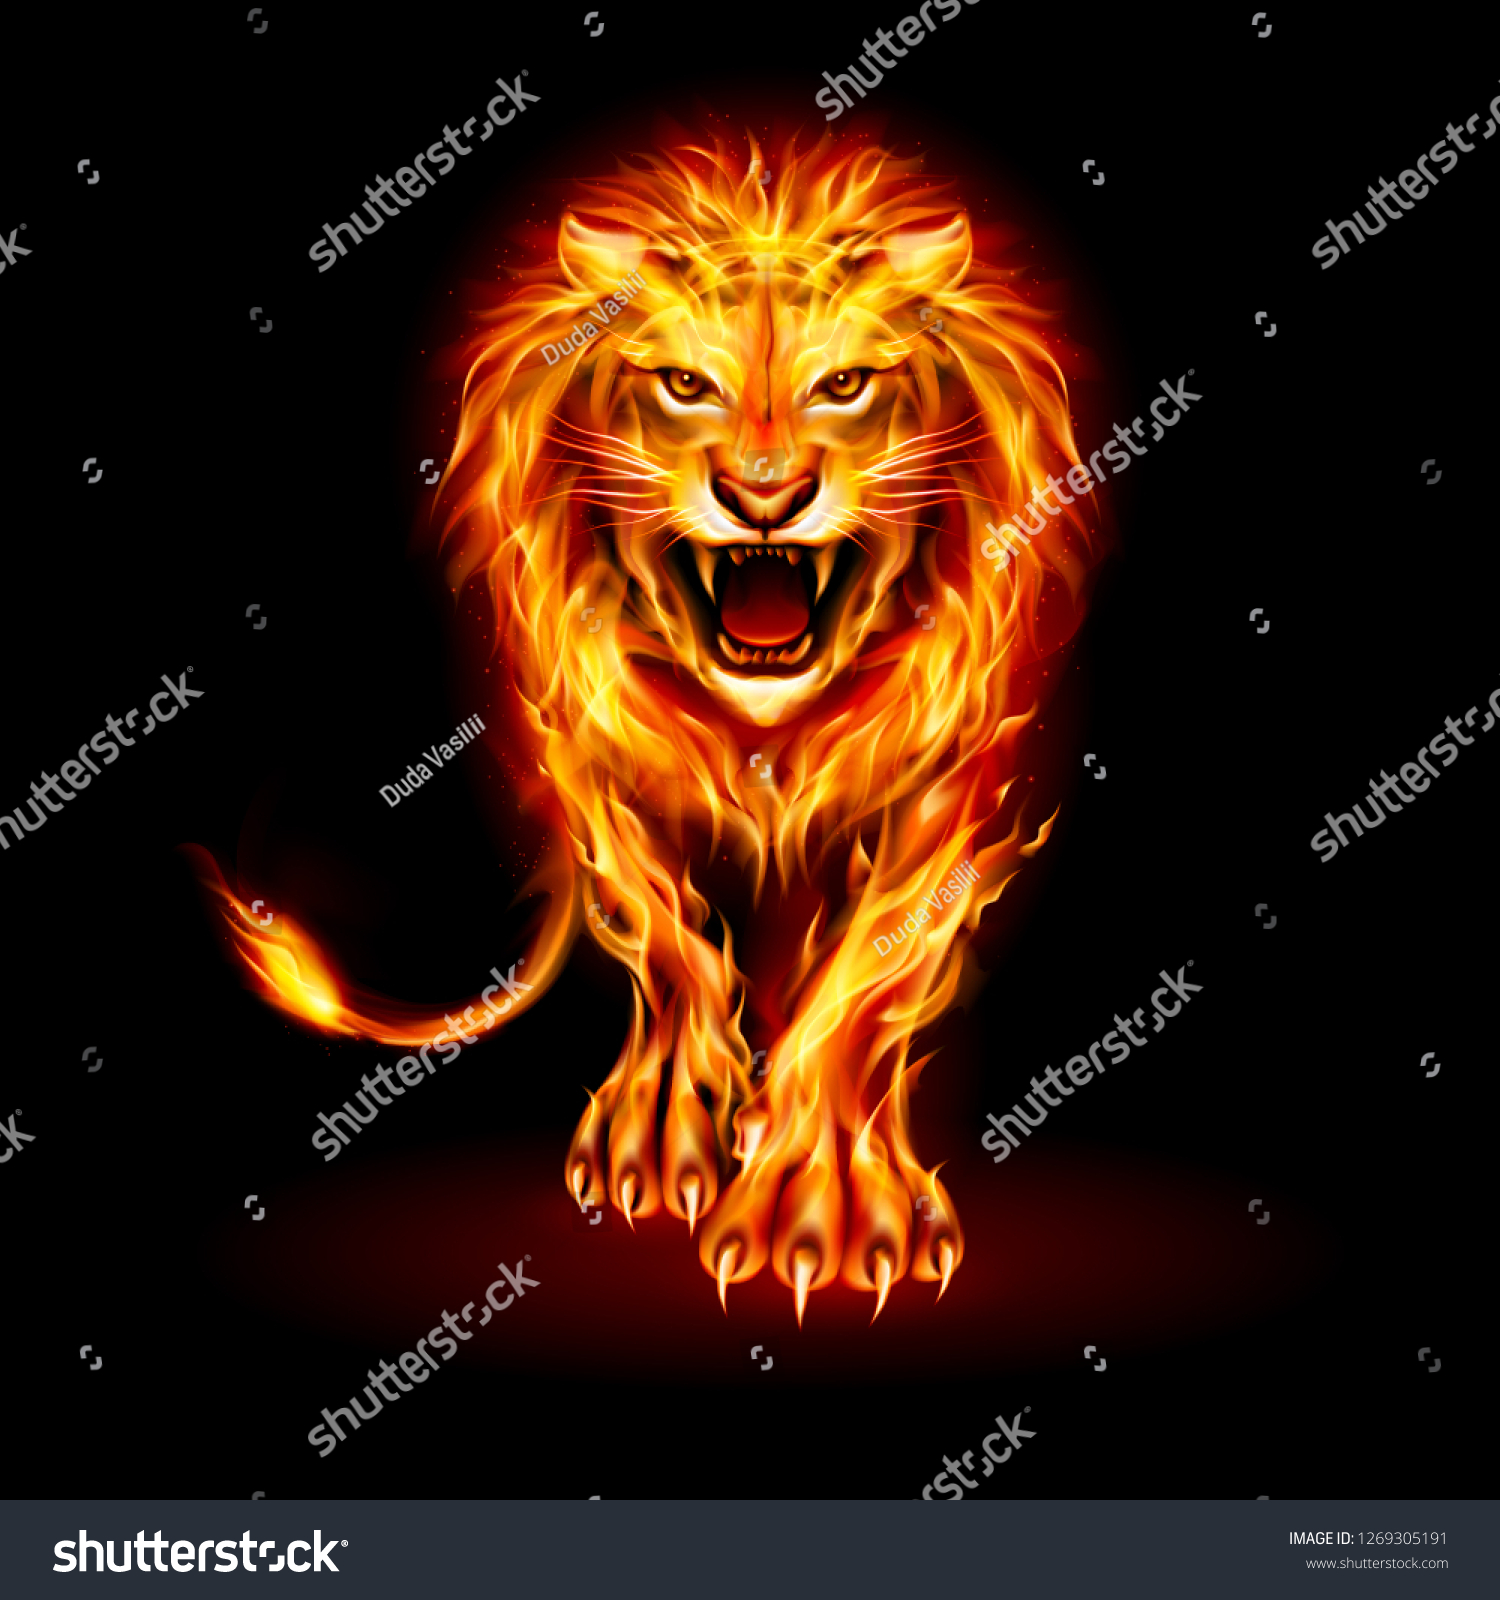 黒い背景に激怒したライオンと火の炎の毛皮の抽象的イラスト のベクター画像素材 ロイヤリティフリー